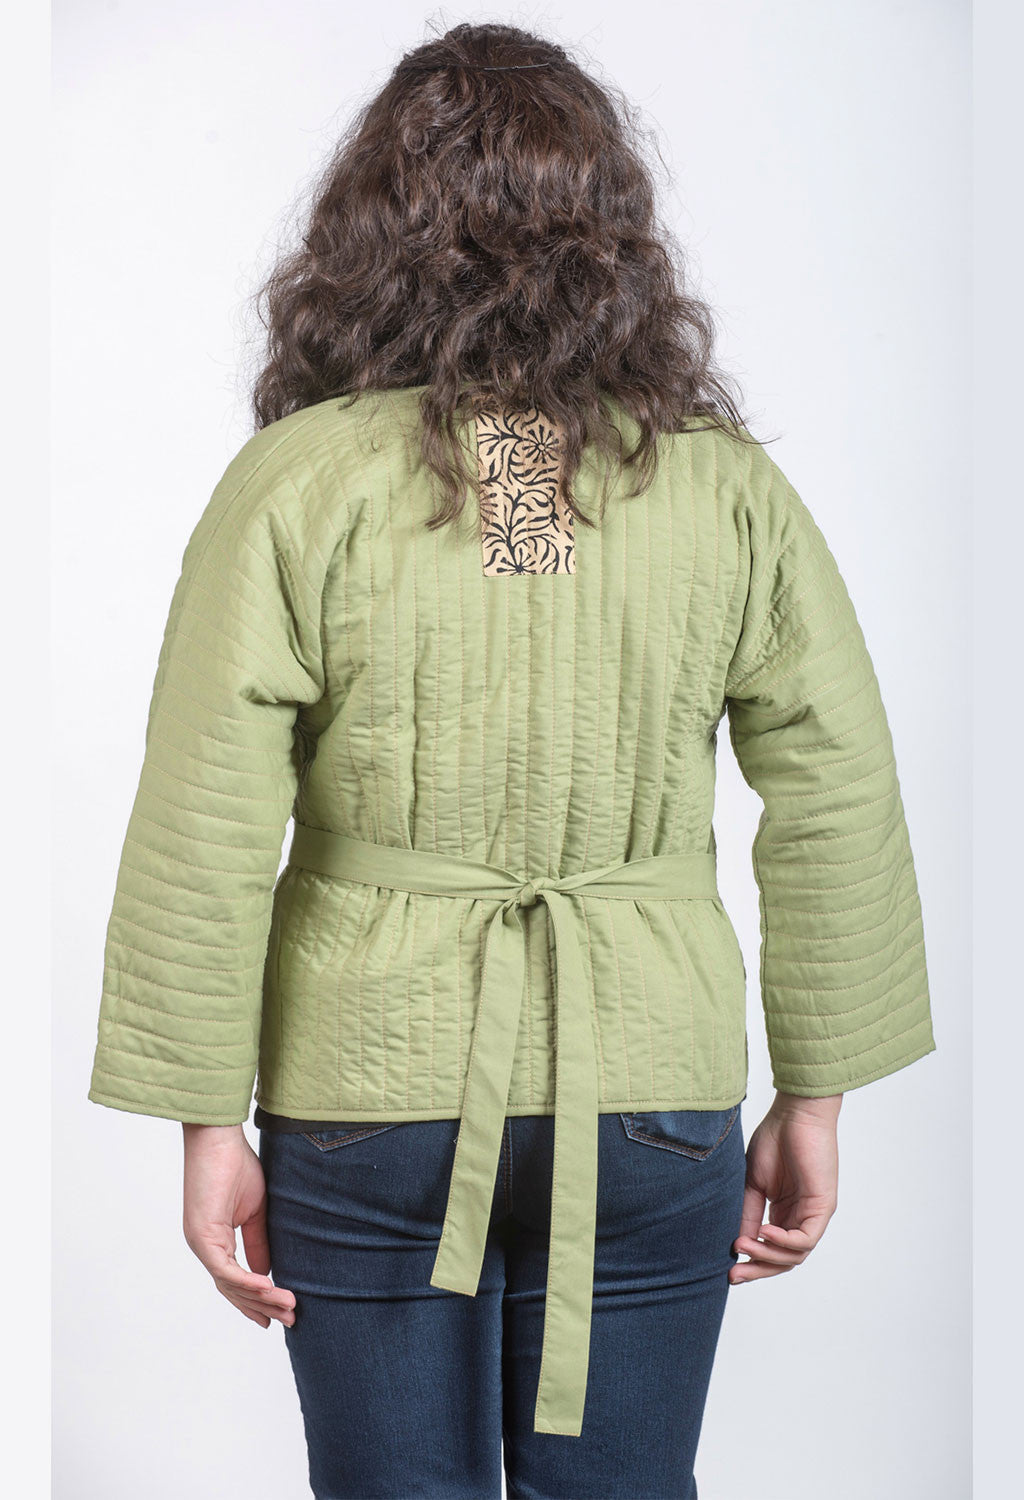 Women's Light Green Waist Jacket